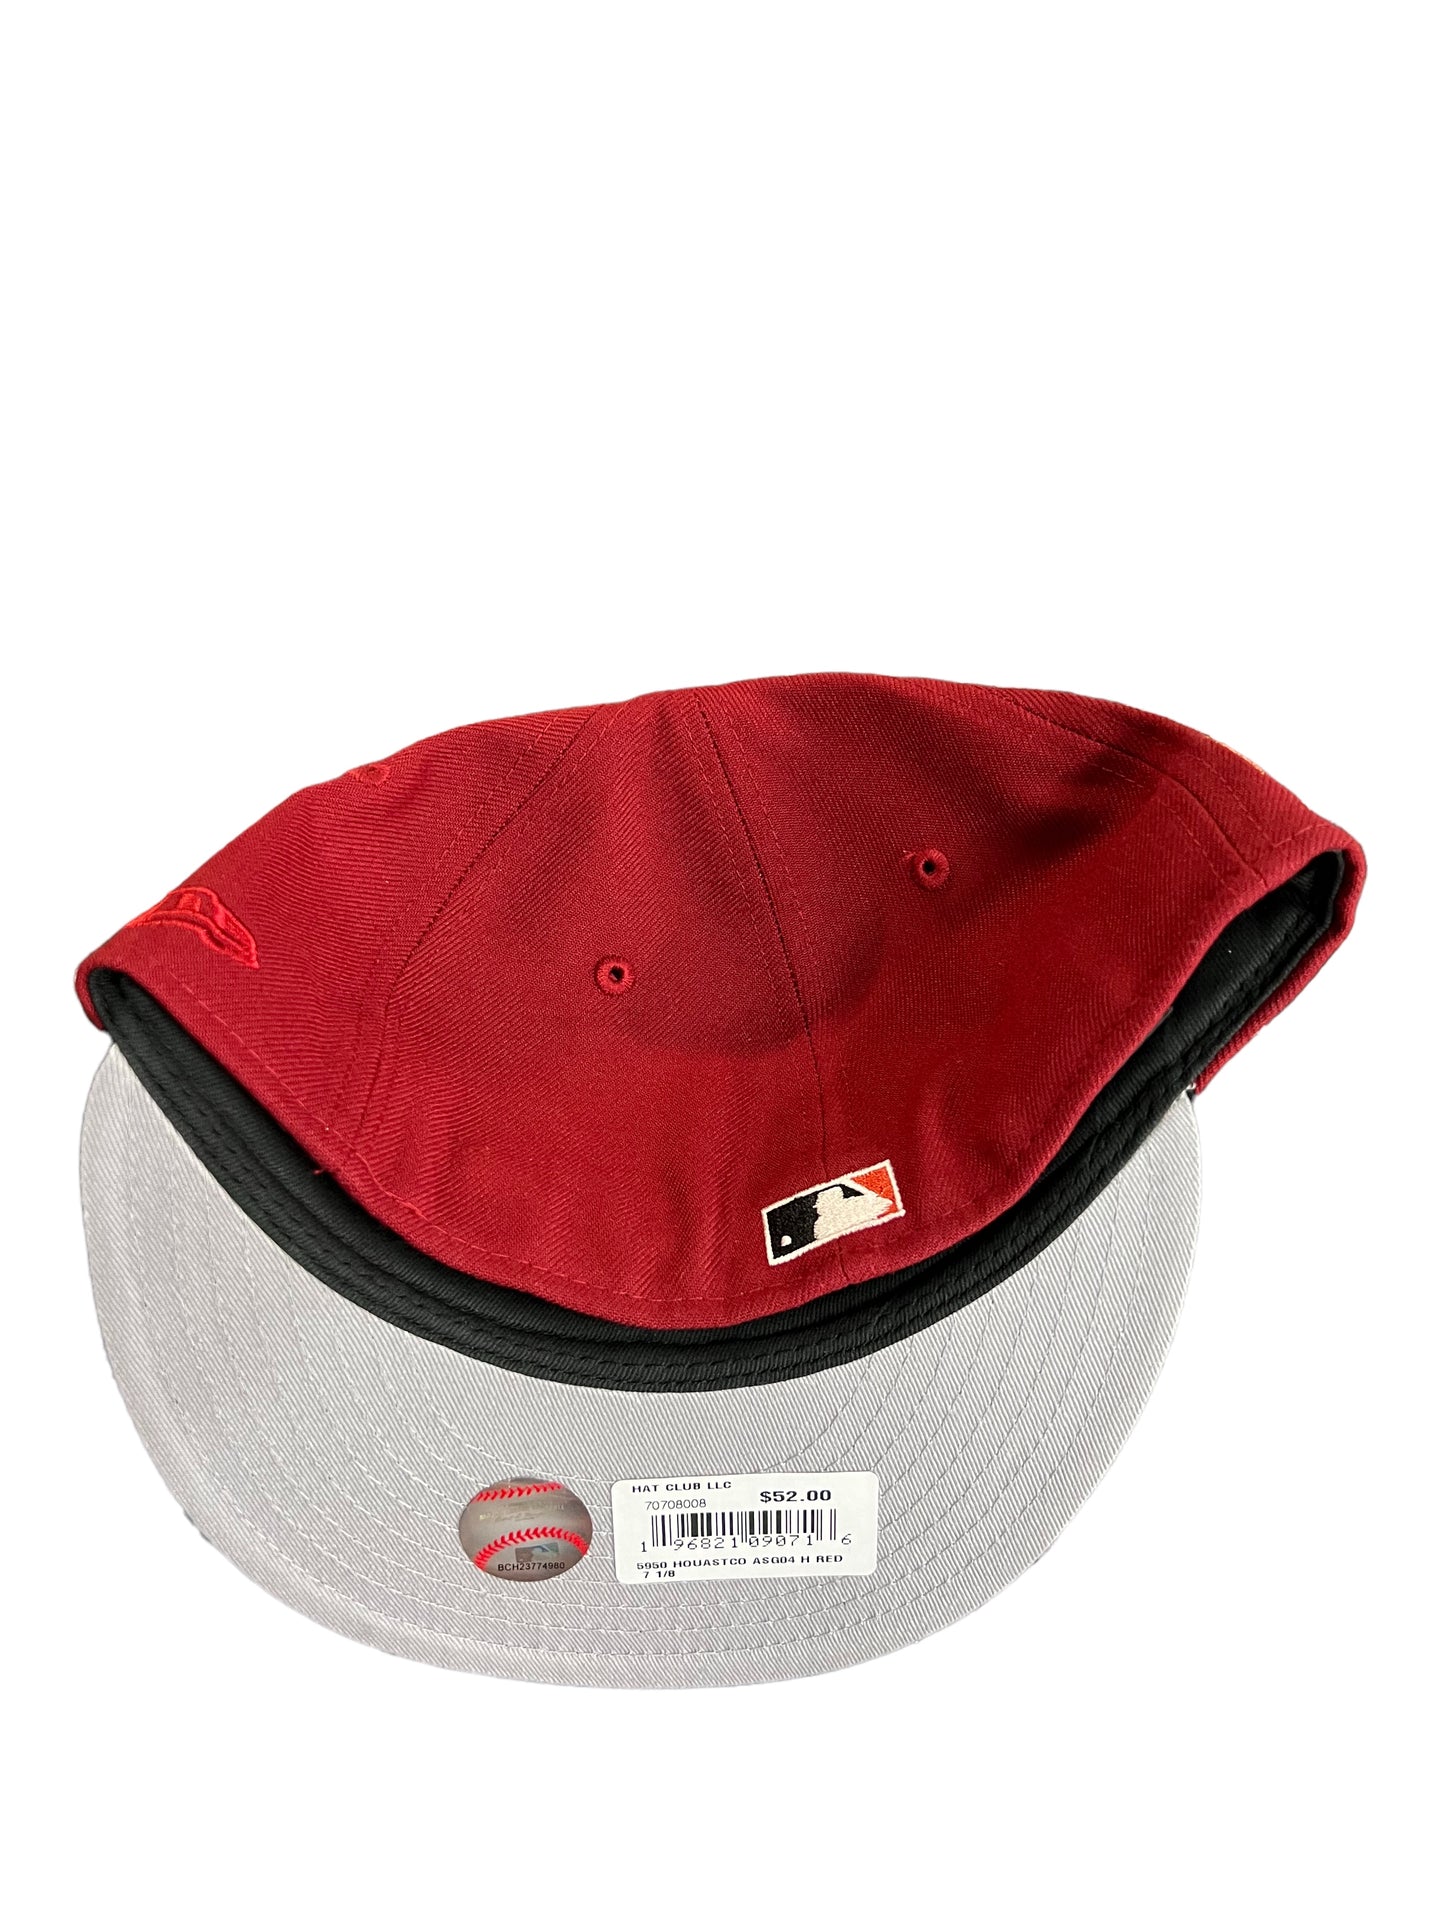 Houston Astros “Brick” Hat